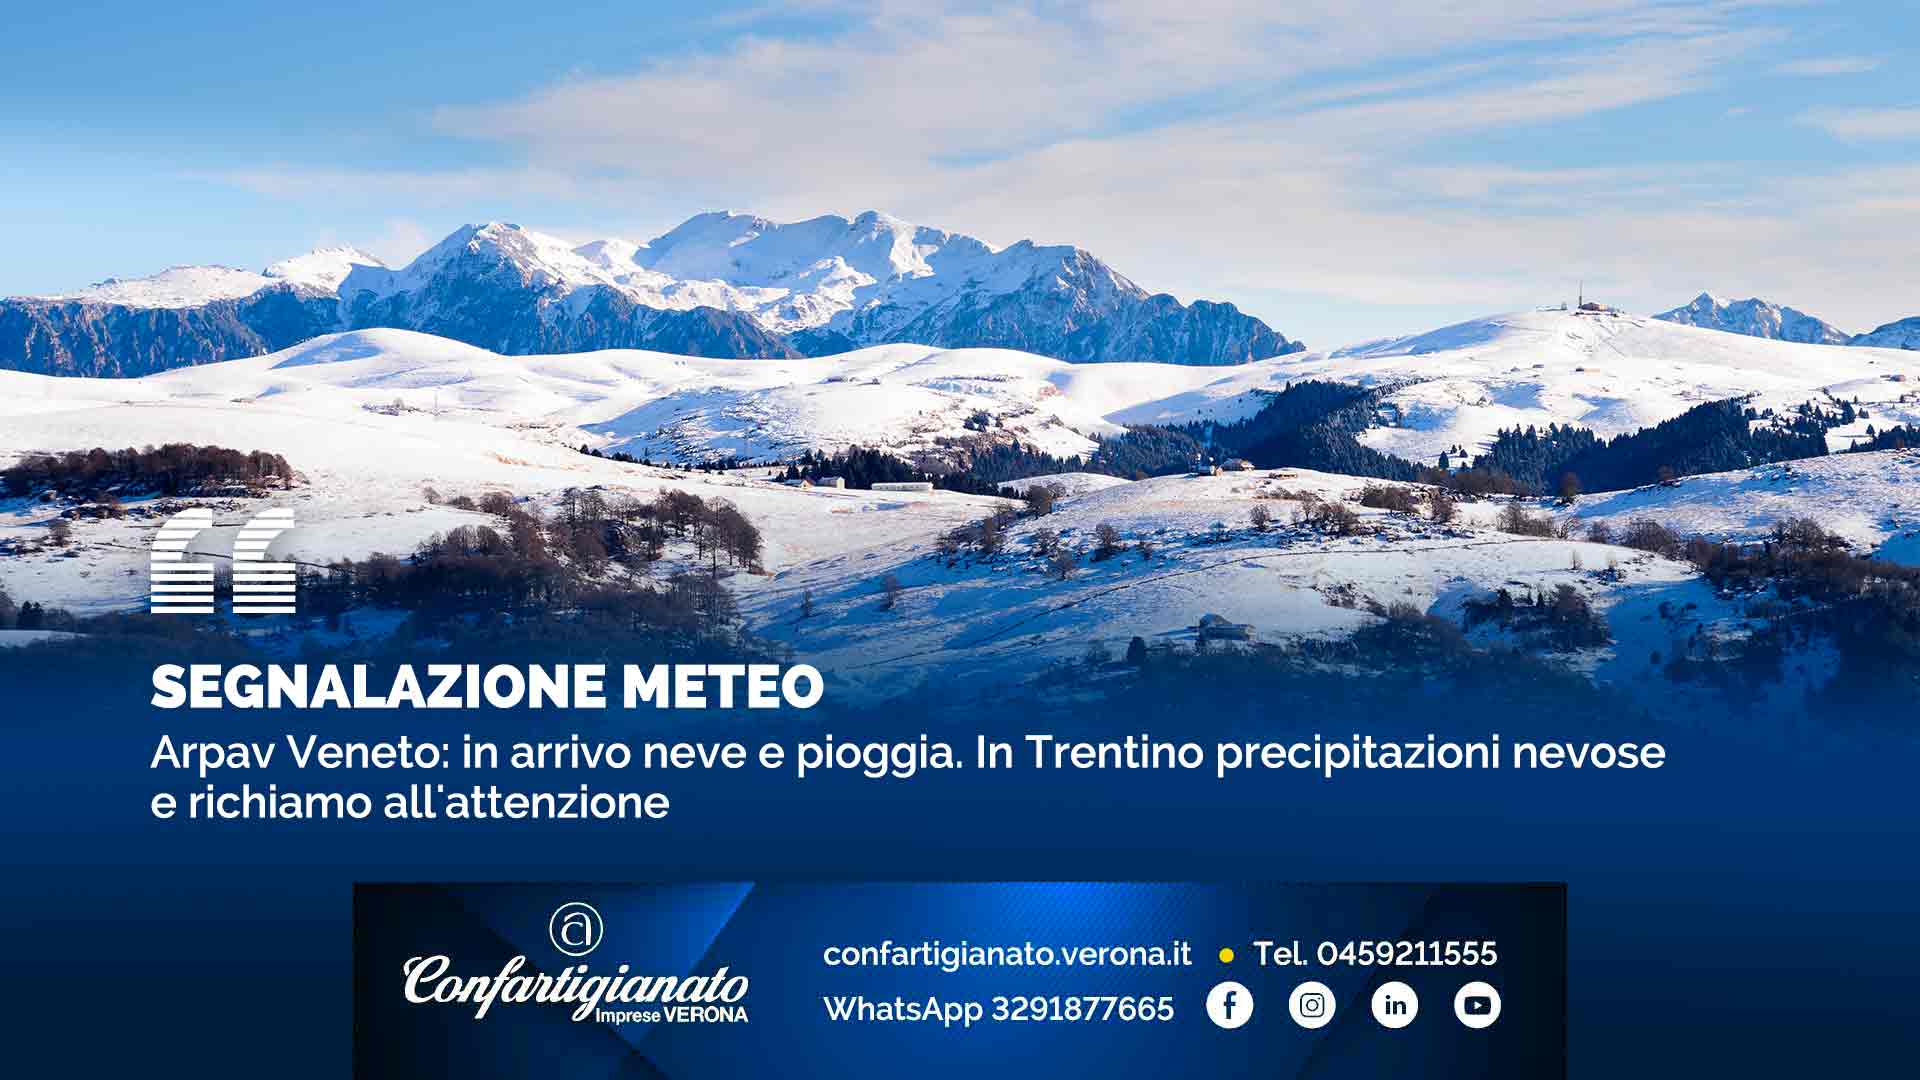 SEGNALAZIONE METEO – Arpav Veneto: in arrivo neve fino a quote collinari. In Trentino precipitazioni nevose e richiamo all'attenzione